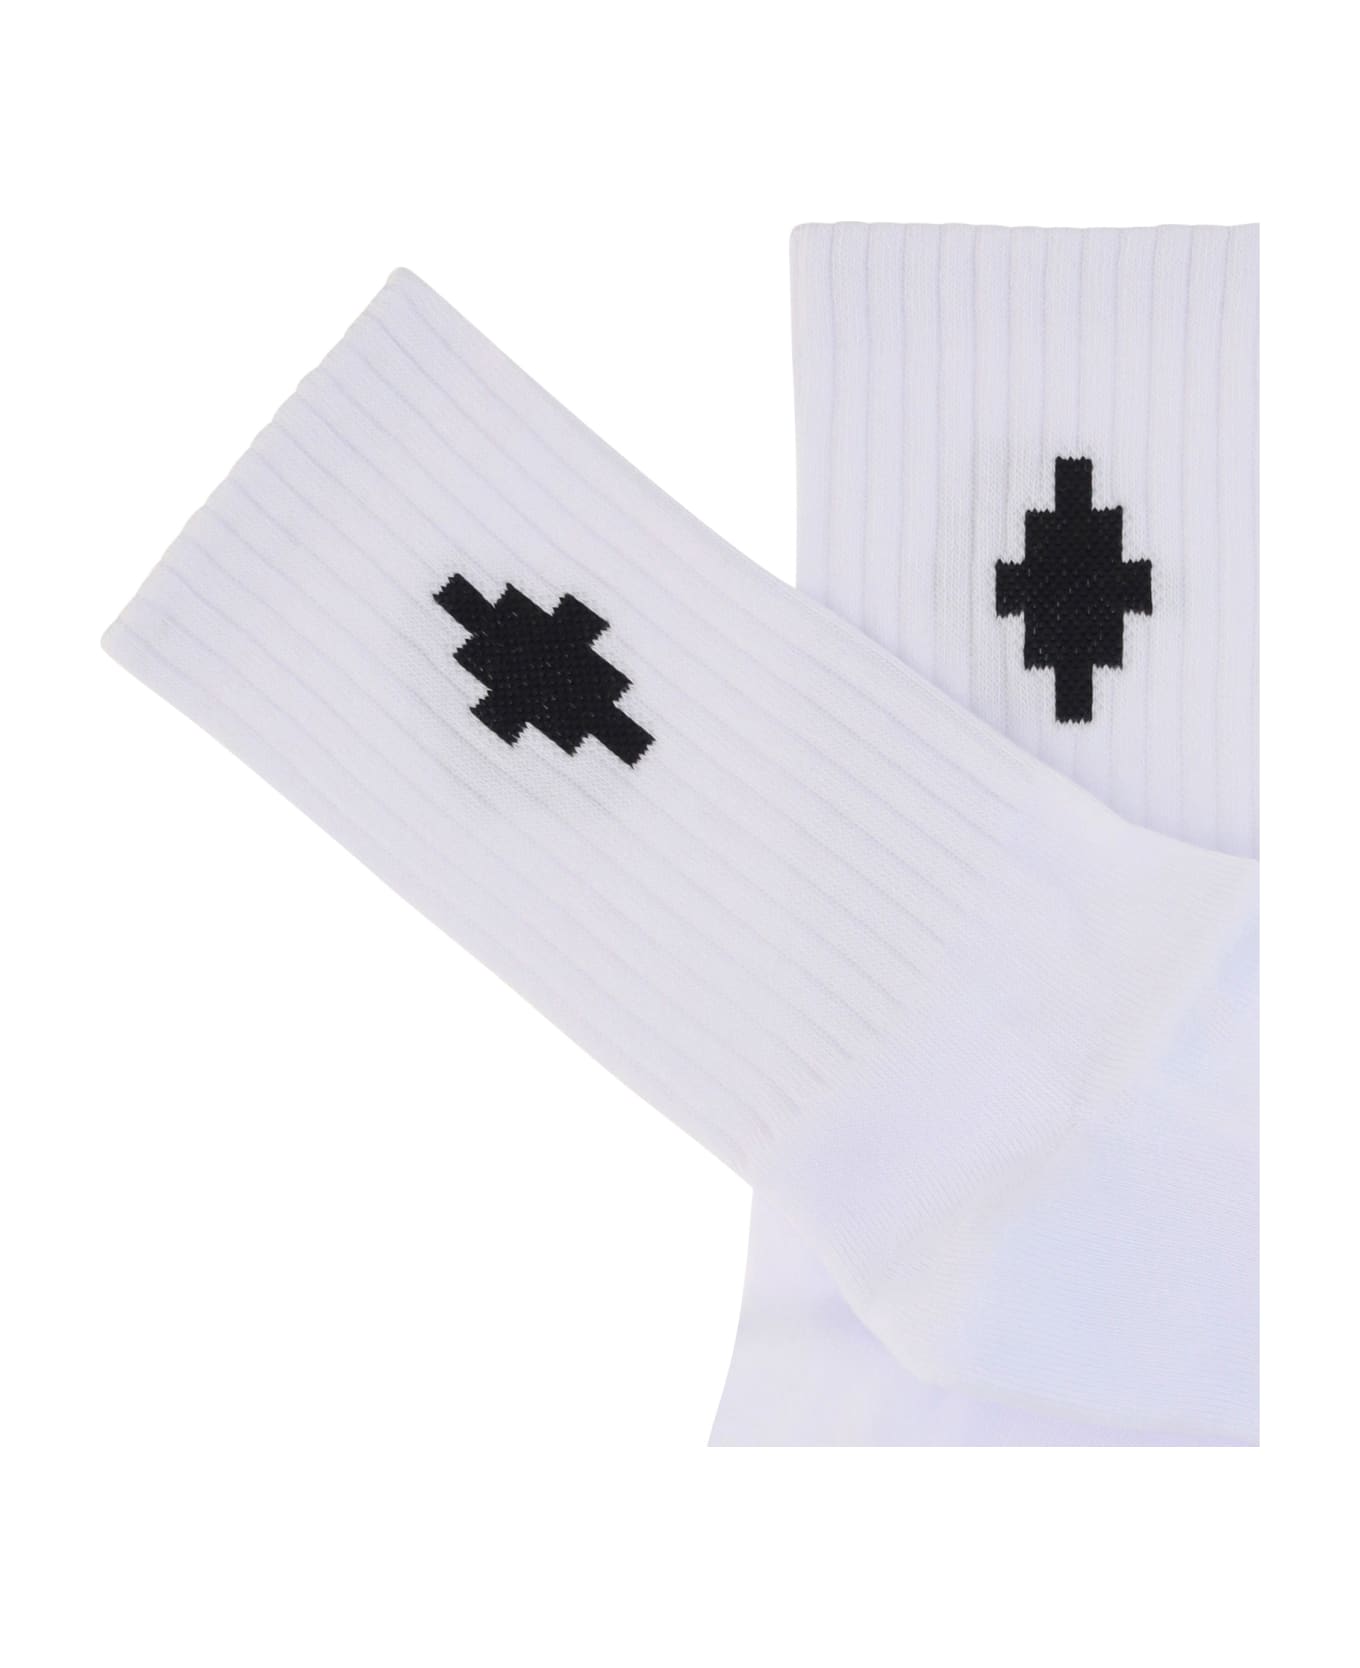 Marcelo Burlon Socks With Cross - White Black